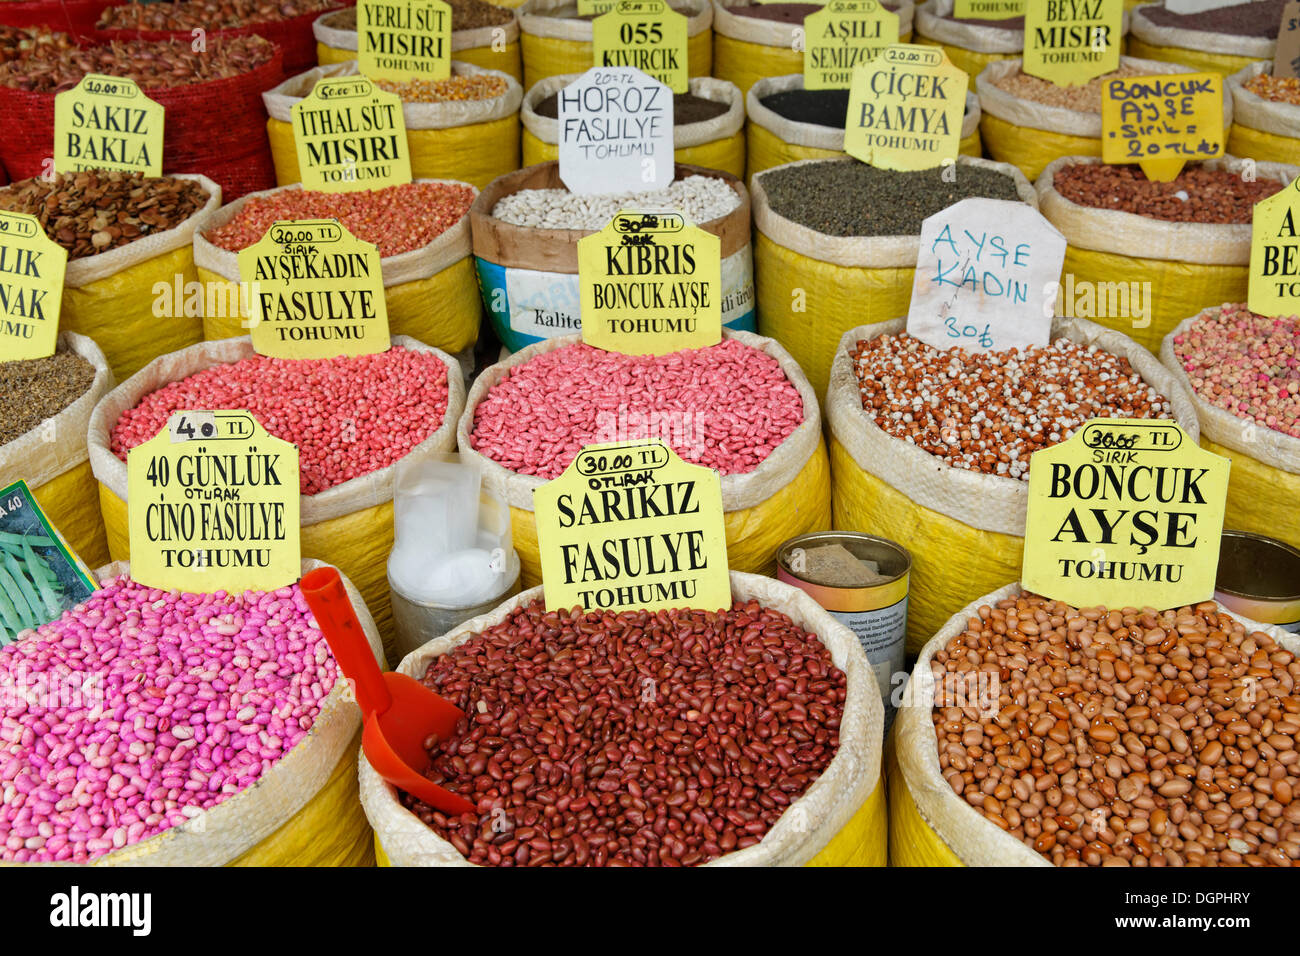 Divers haricots dans des sacs, Bazar égyptien, ou marché aux épices, Misir Çarşısı, Eminönü, Istanbul, côté Européen Banque D'Images